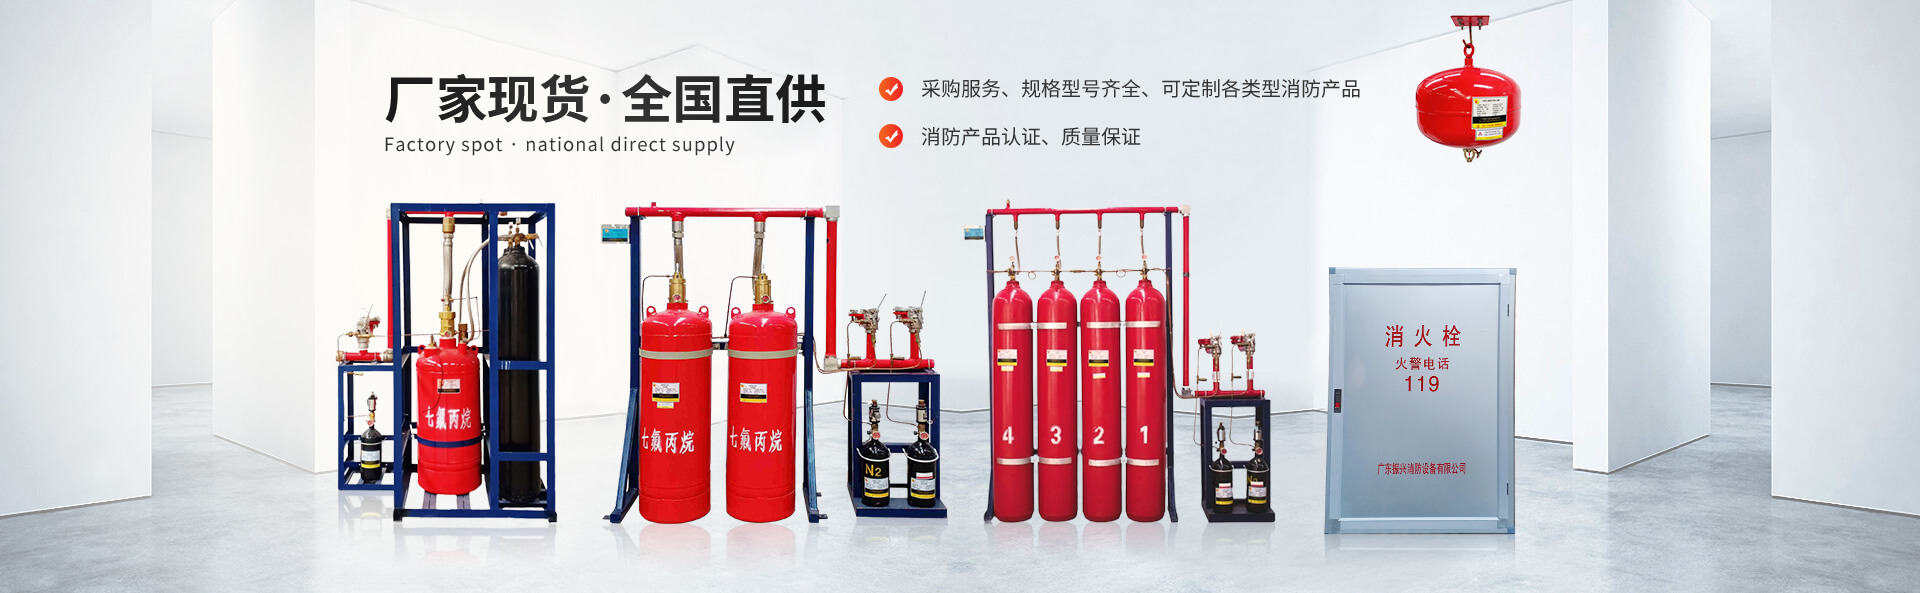 广东振兴消防设备有限公司